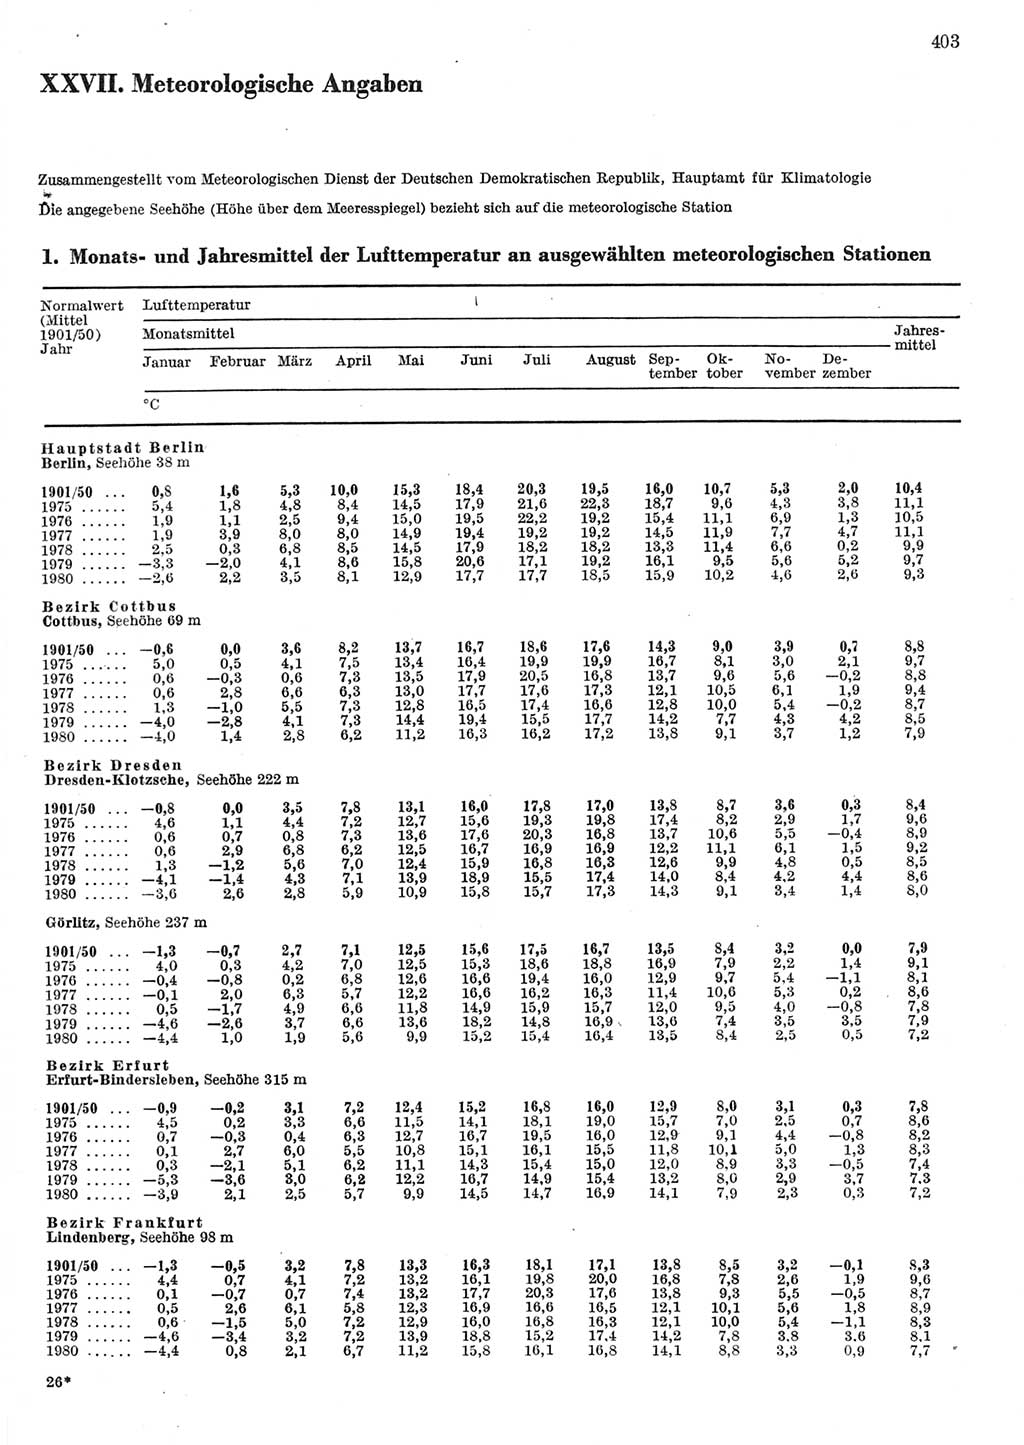 Statistisches Jahrbuch der Deutschen Demokratischen Republik (DDR) 1981, Seite 403 (Stat. Jb. DDR 1981, S. 403)